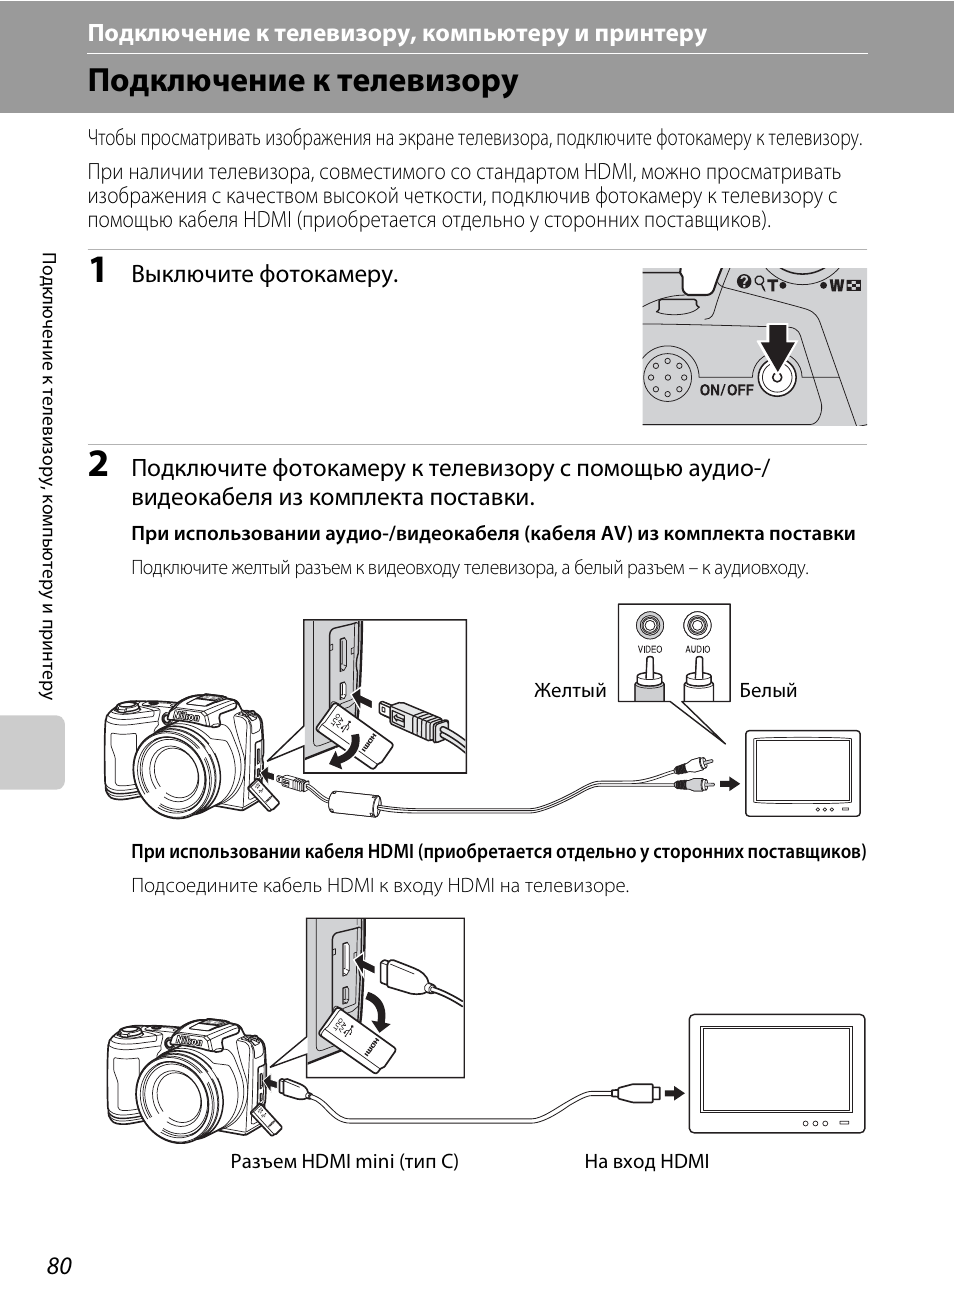 Как подключить фотоаппарат к компьютеру - canon через wifi, usb, hdmi